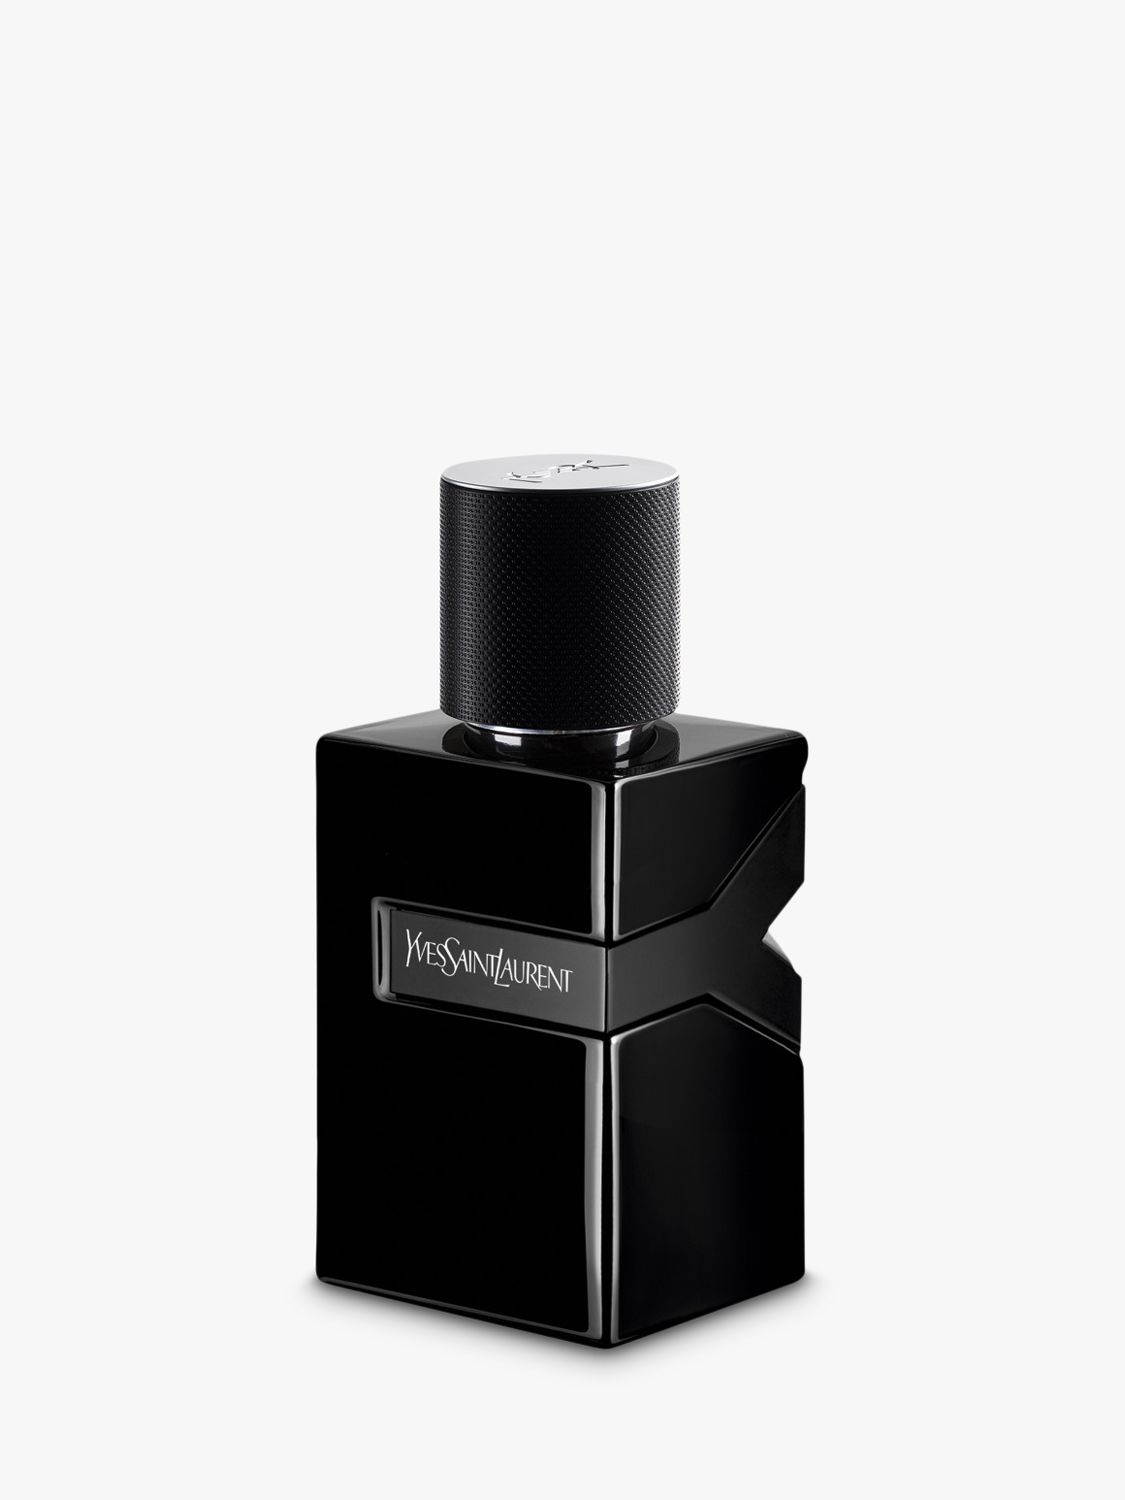 Yves Saint Laurent Y For Men Le Parfum, 60ml at John Lewis &